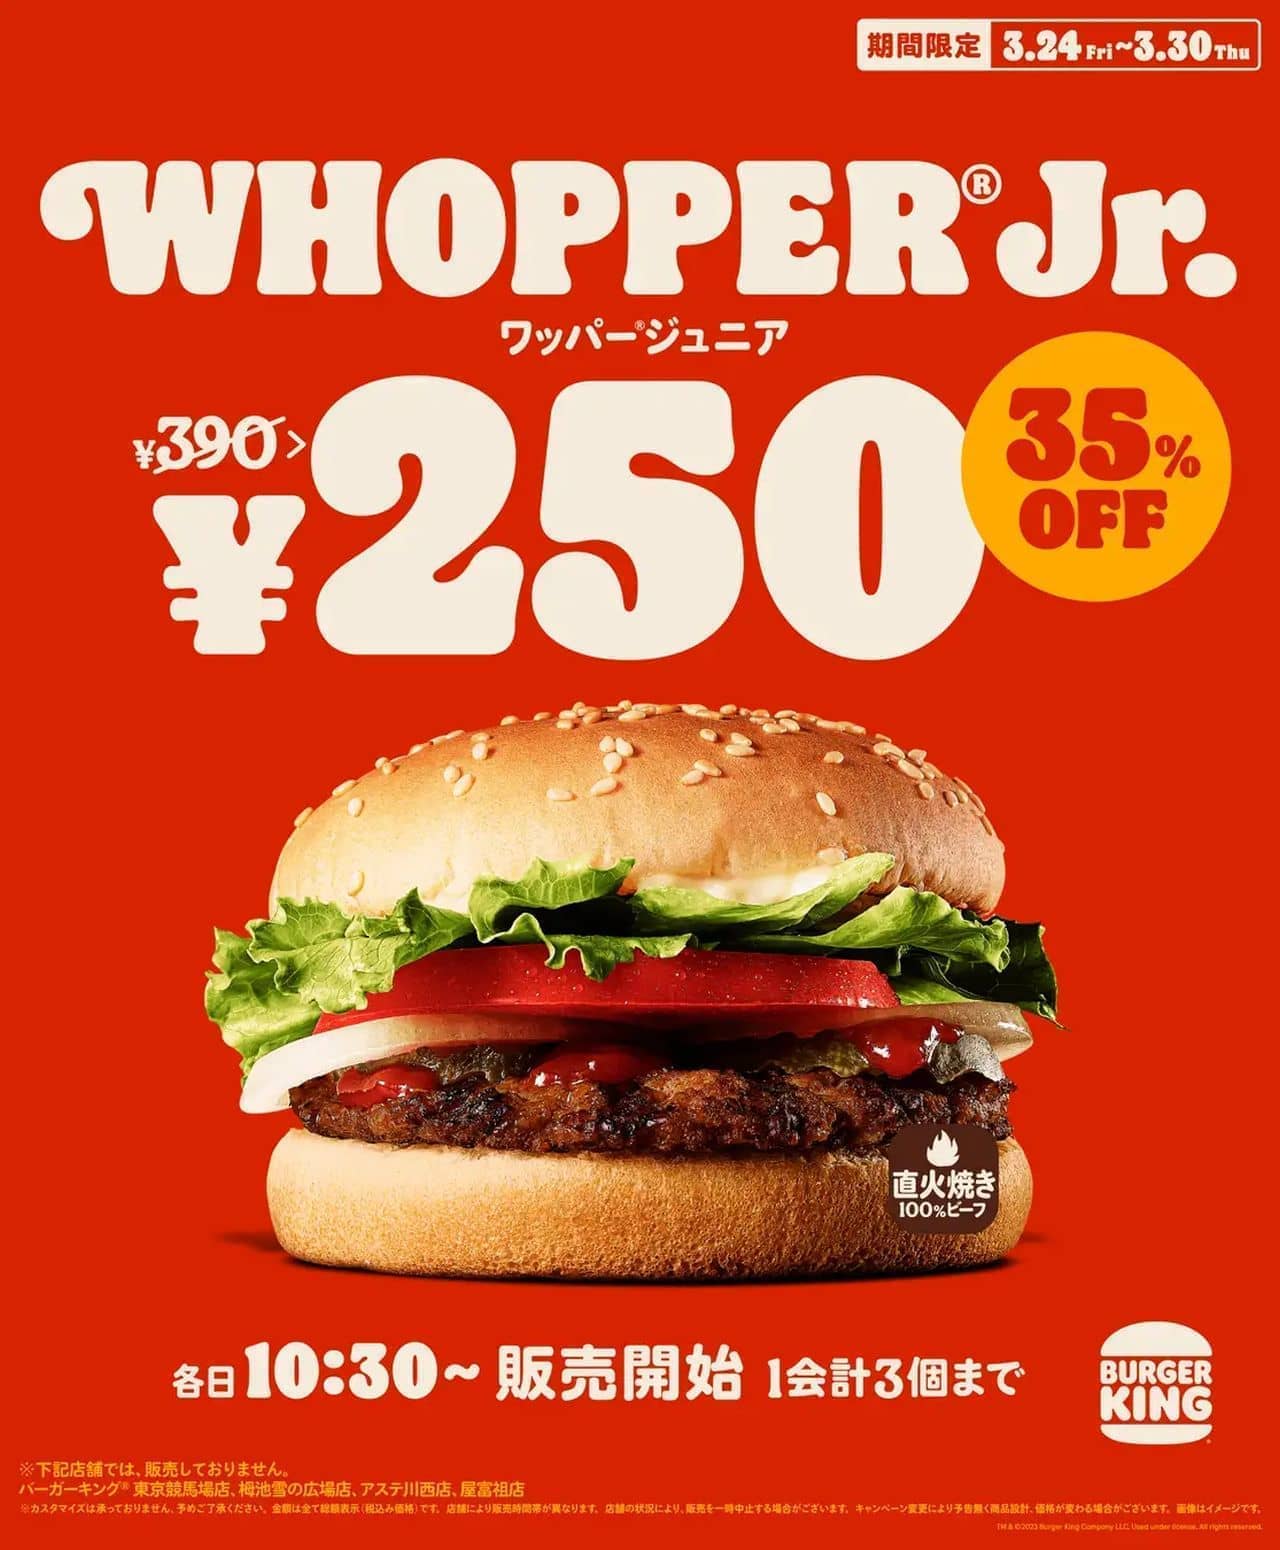 バーガーキング ワッパー ジュニア 250円キャンペーン